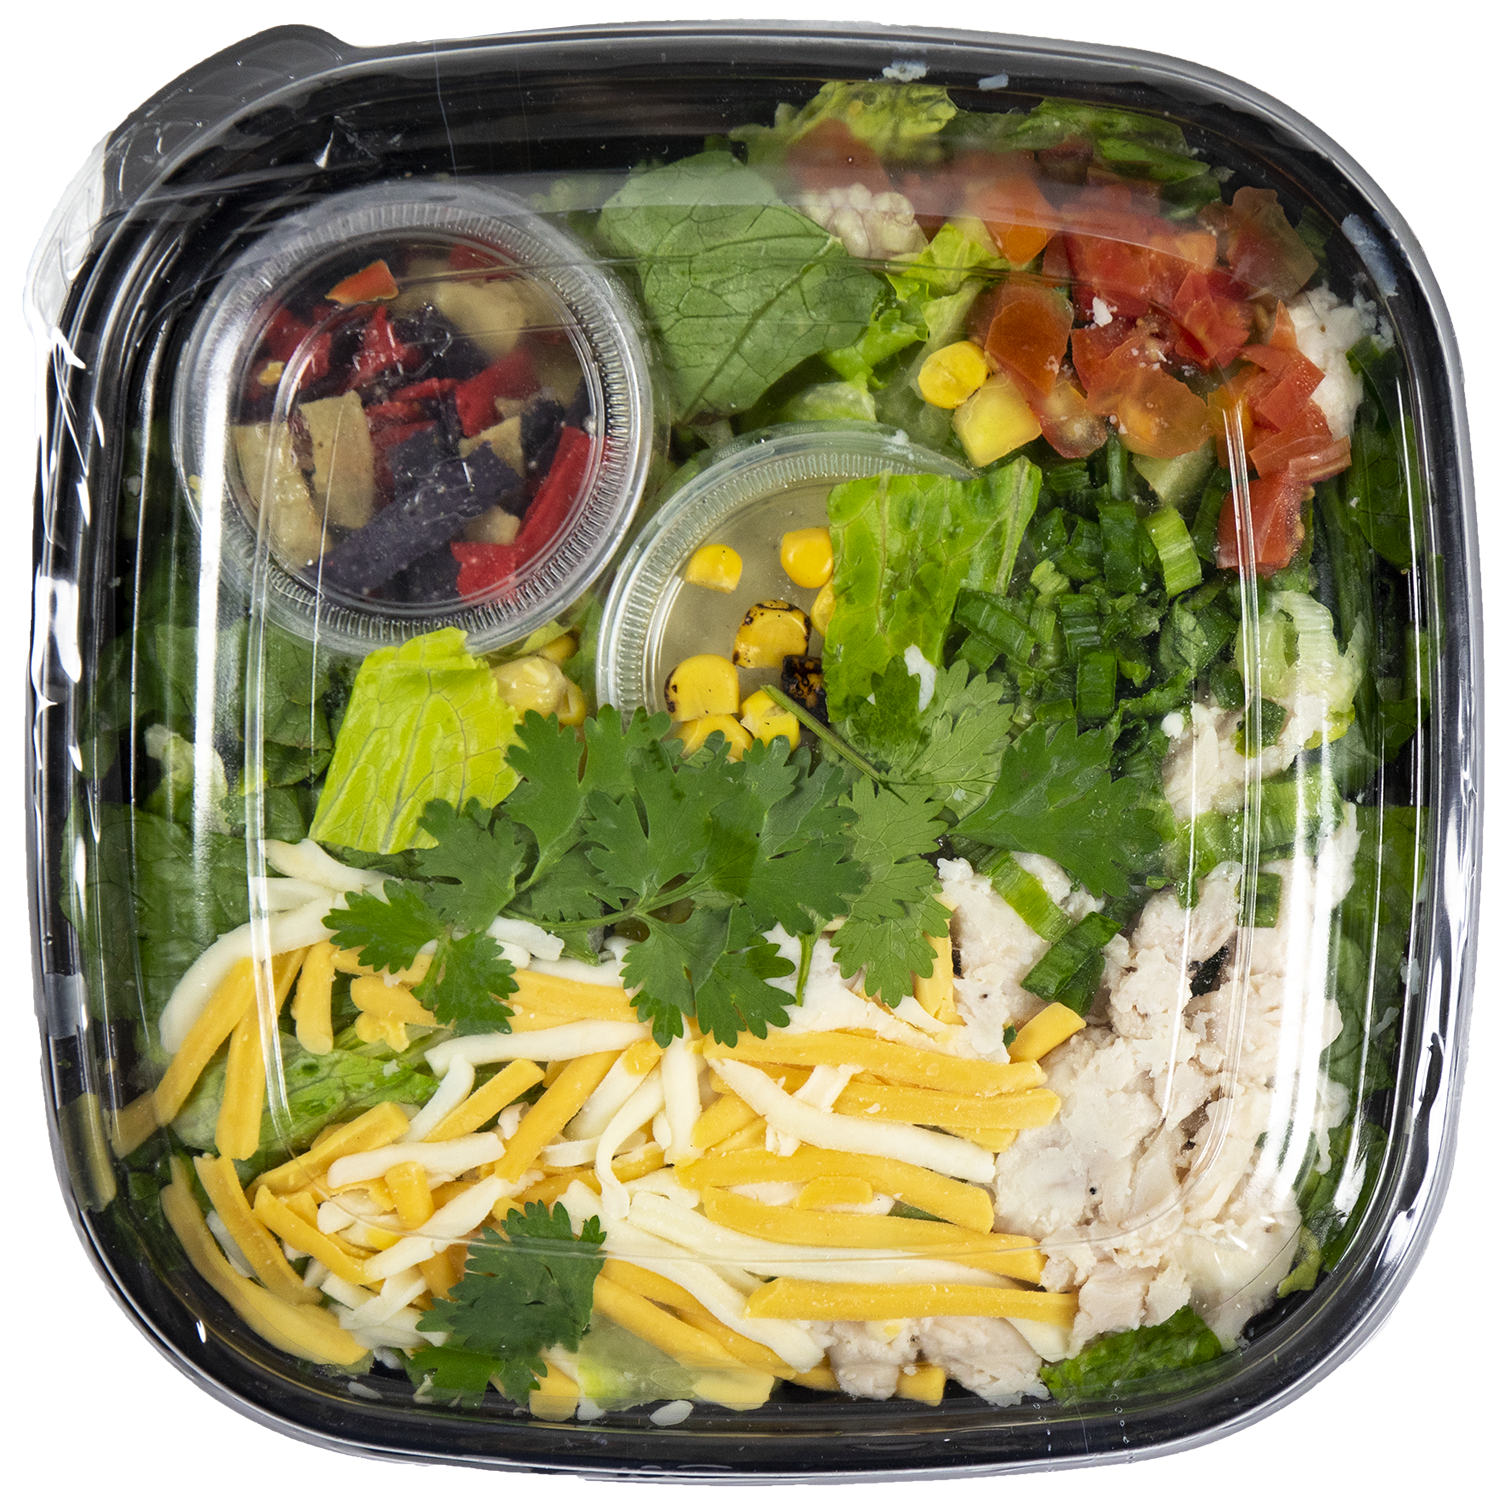 Retail Salads - Grab-N-Go